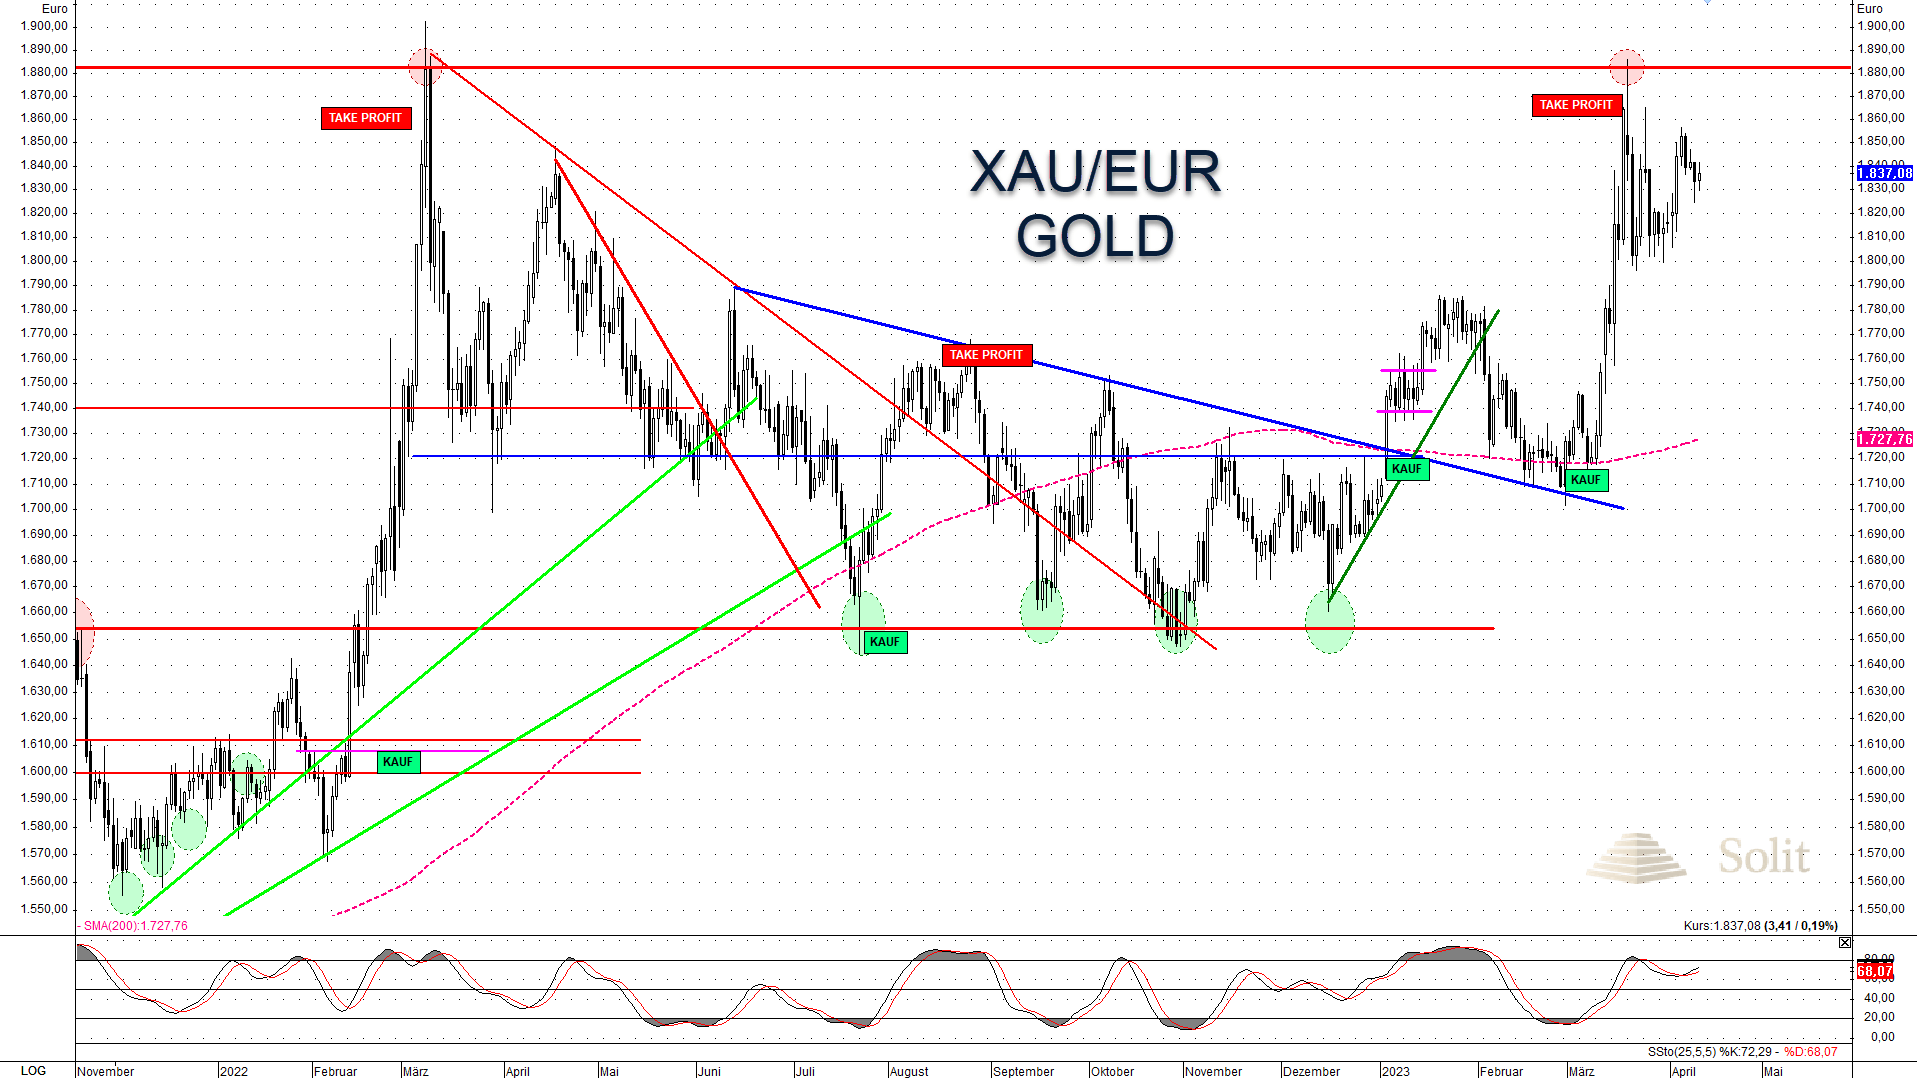 Goldpreis in Euro fast auf Allzeithoch